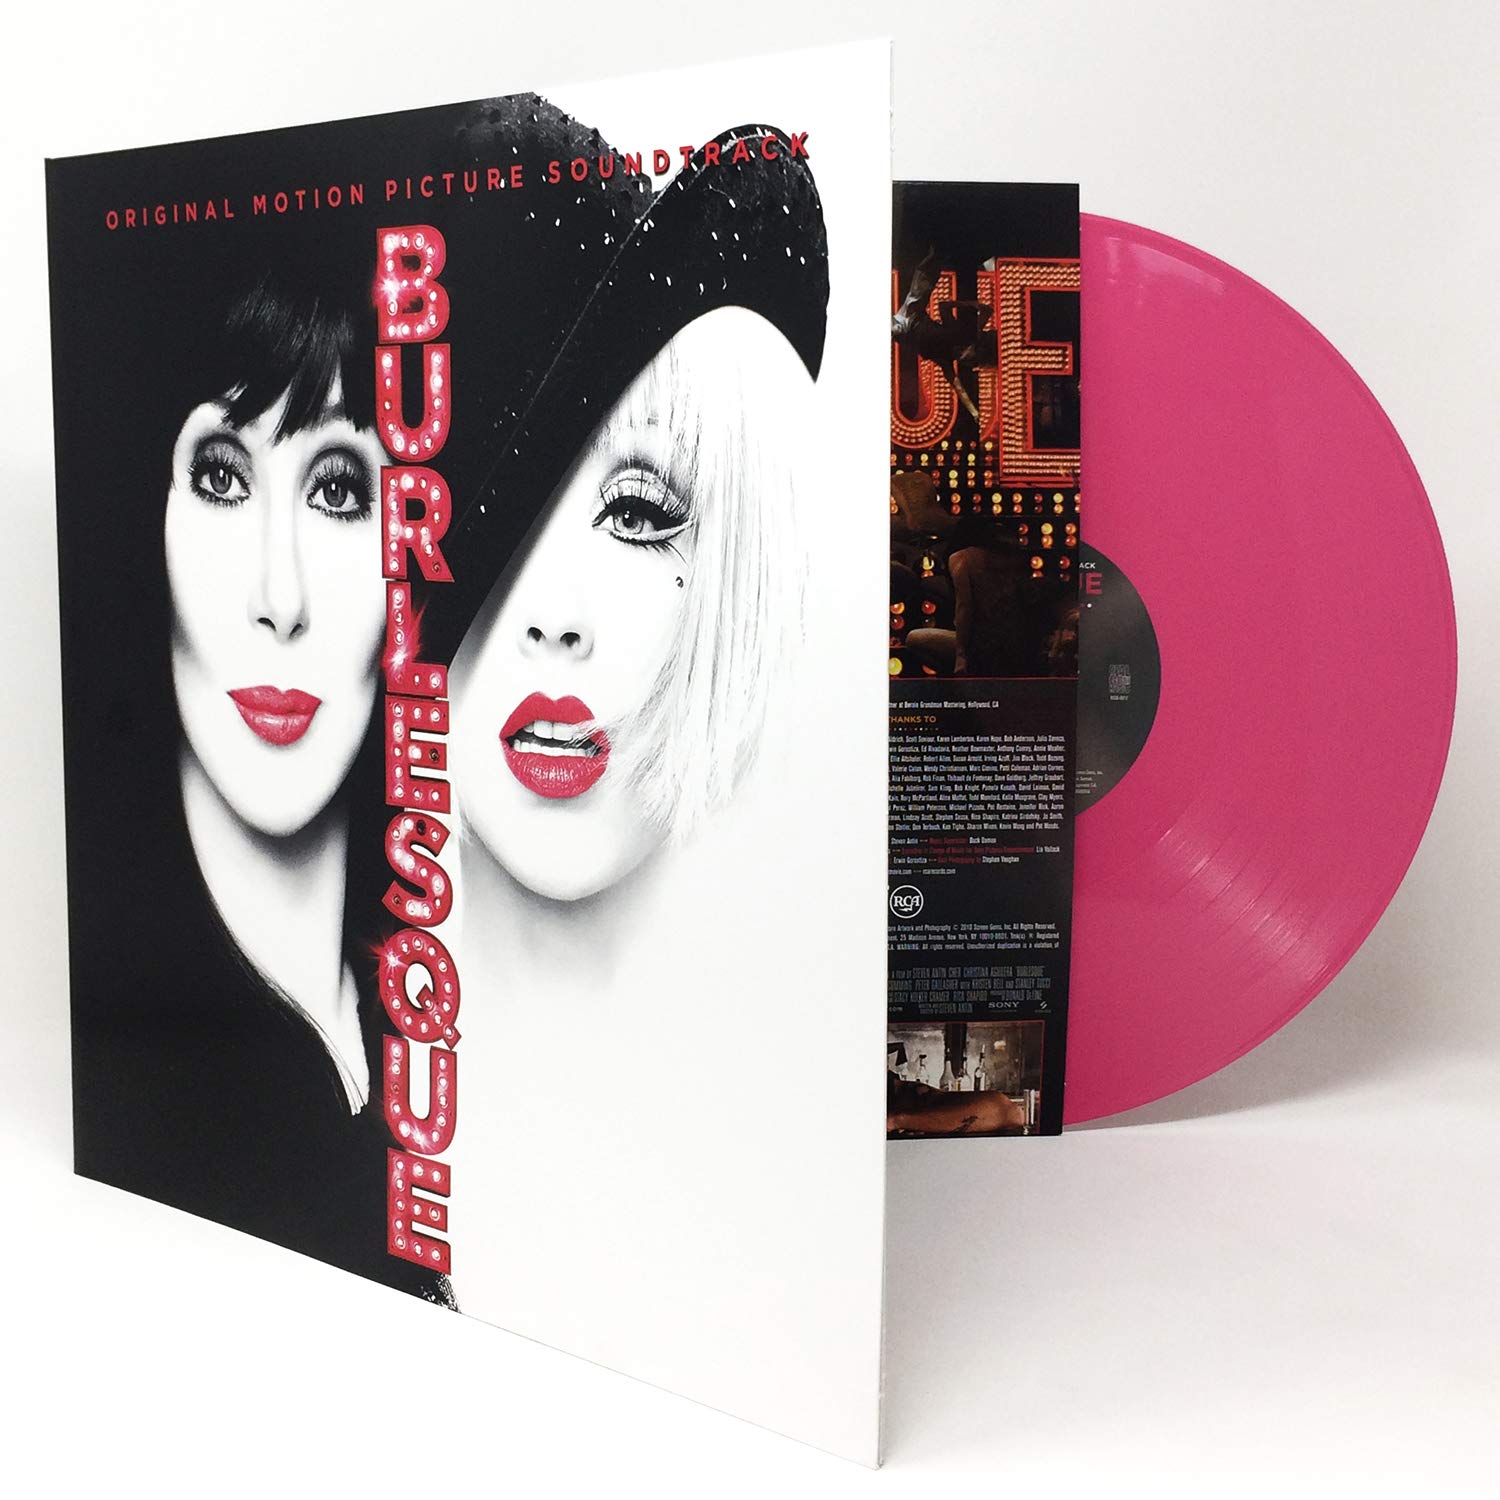 Burlesque (Original Motion Picture Soundtrack) (Limited Hot Pink Vinyl LP)